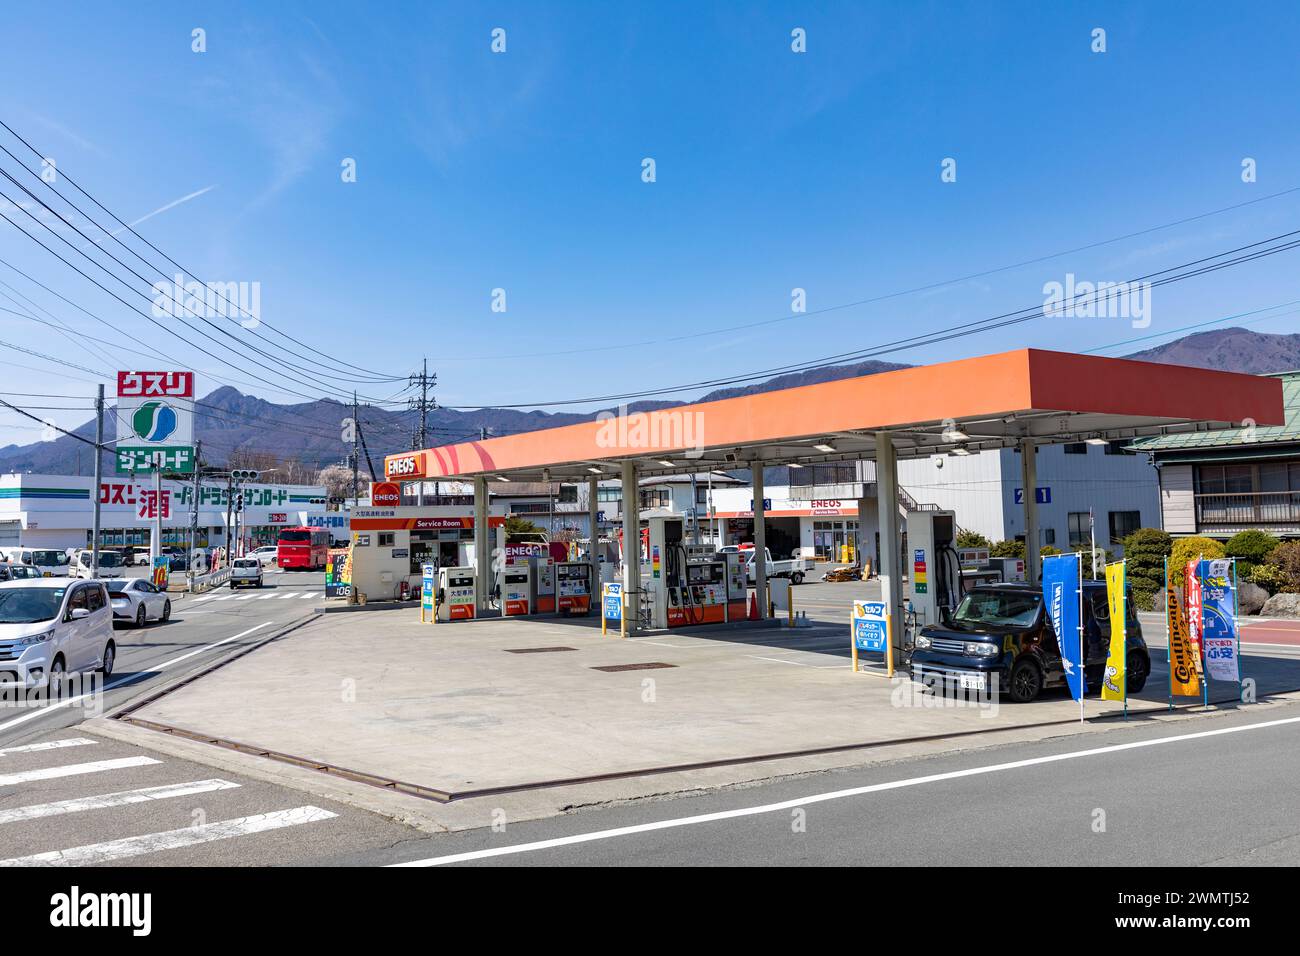 ENEOS Tankstelle in der Region fünf Seen, Mt. Fuji, Japan, 2023, Benzin- und Dieselkraftstofftankstelle für Kraftfahrzeuge Stockfoto